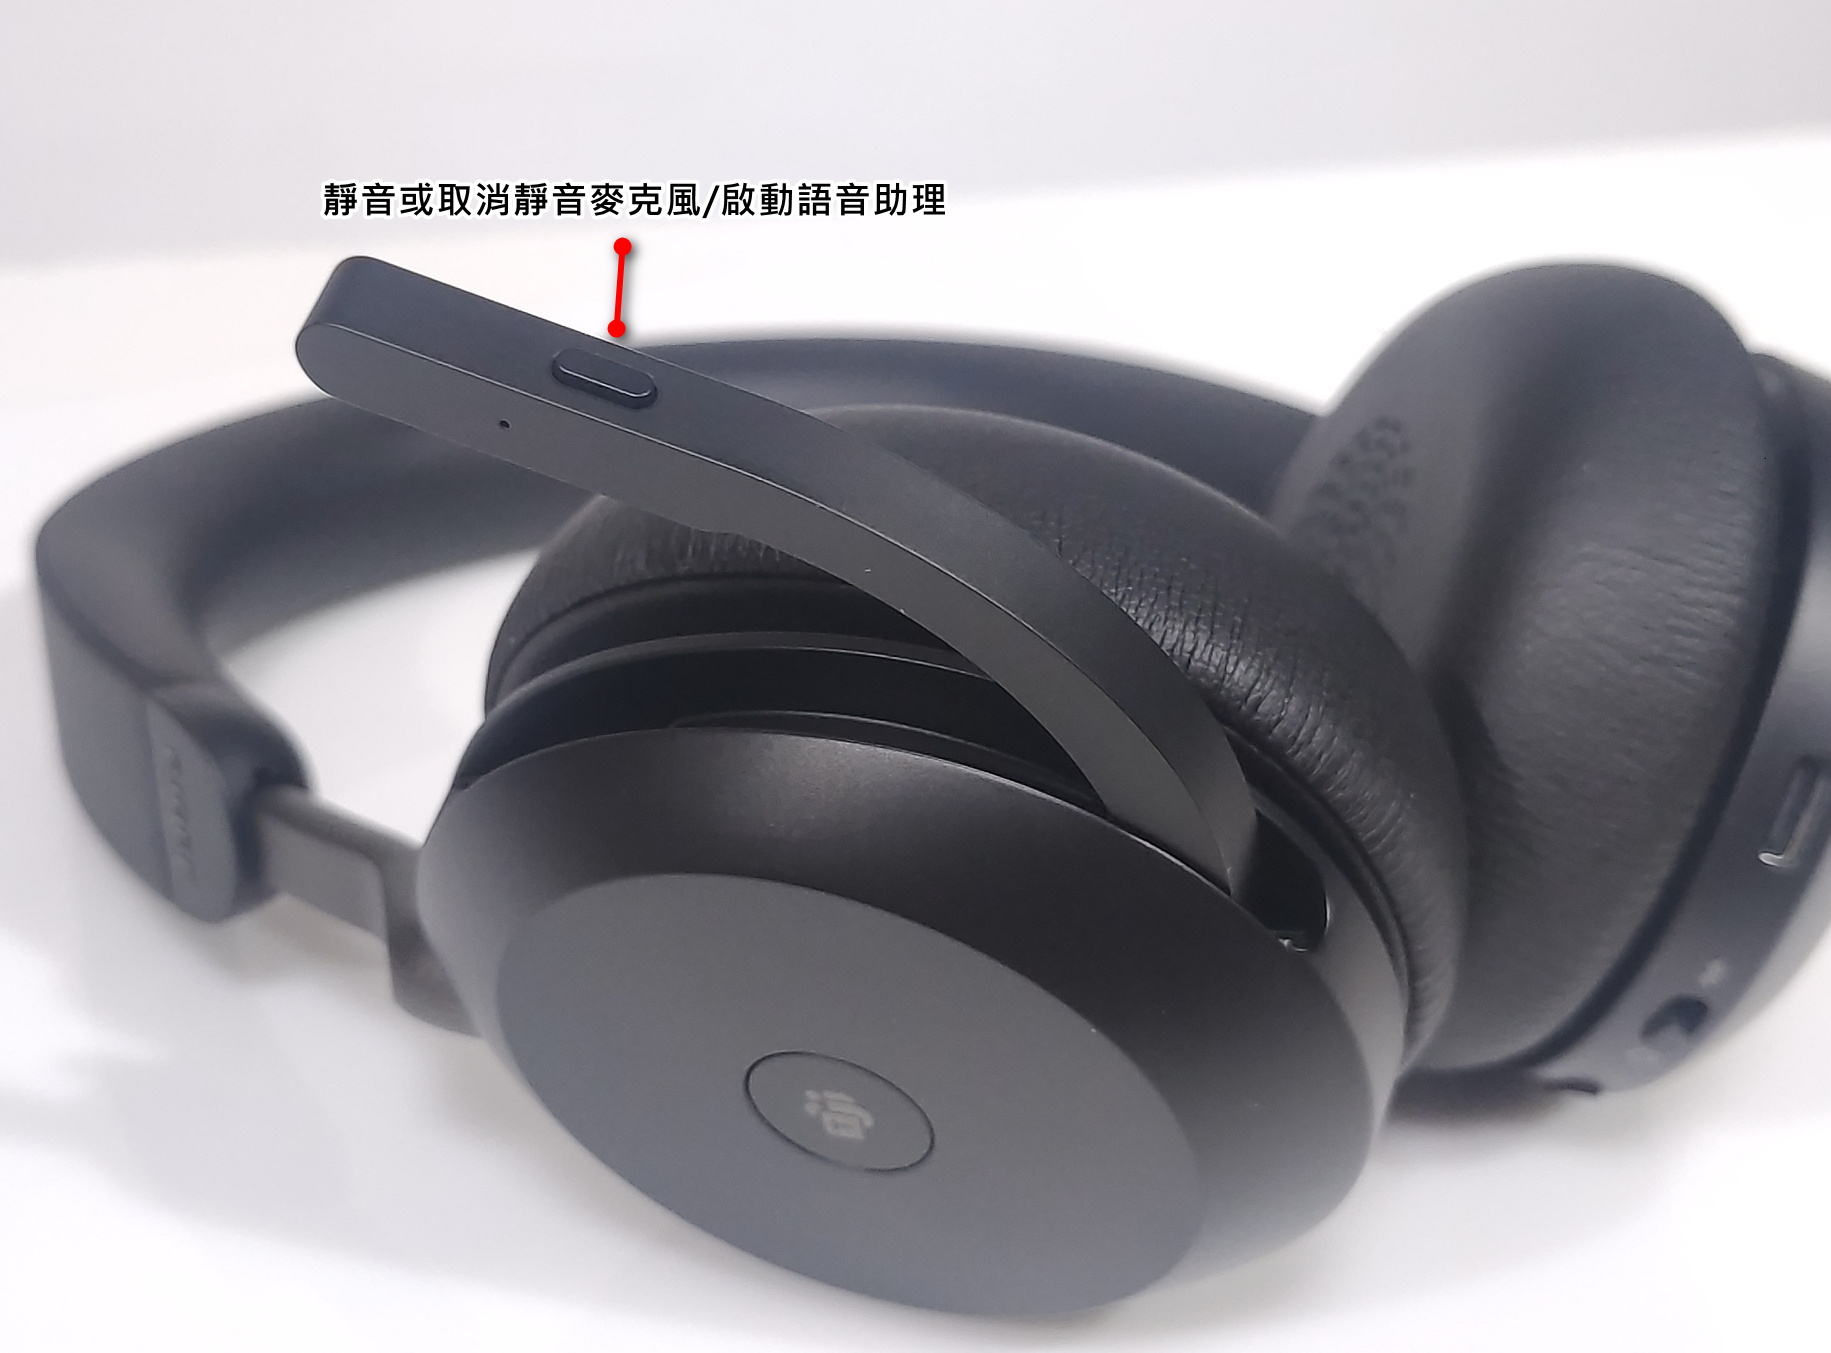 【開箱】Jabra Evolve2 75專業商務耳機，通話之王，微軟認證，收音超清晰，可調節主動降噪，2022最推薦商務藍牙耳機。 - 編輯推薦, Evolve, 敗家輝哥, 藍芽耳機, 藍牙耳機, Jabra, 耳機, 麥克風 - 敗家達人推薦